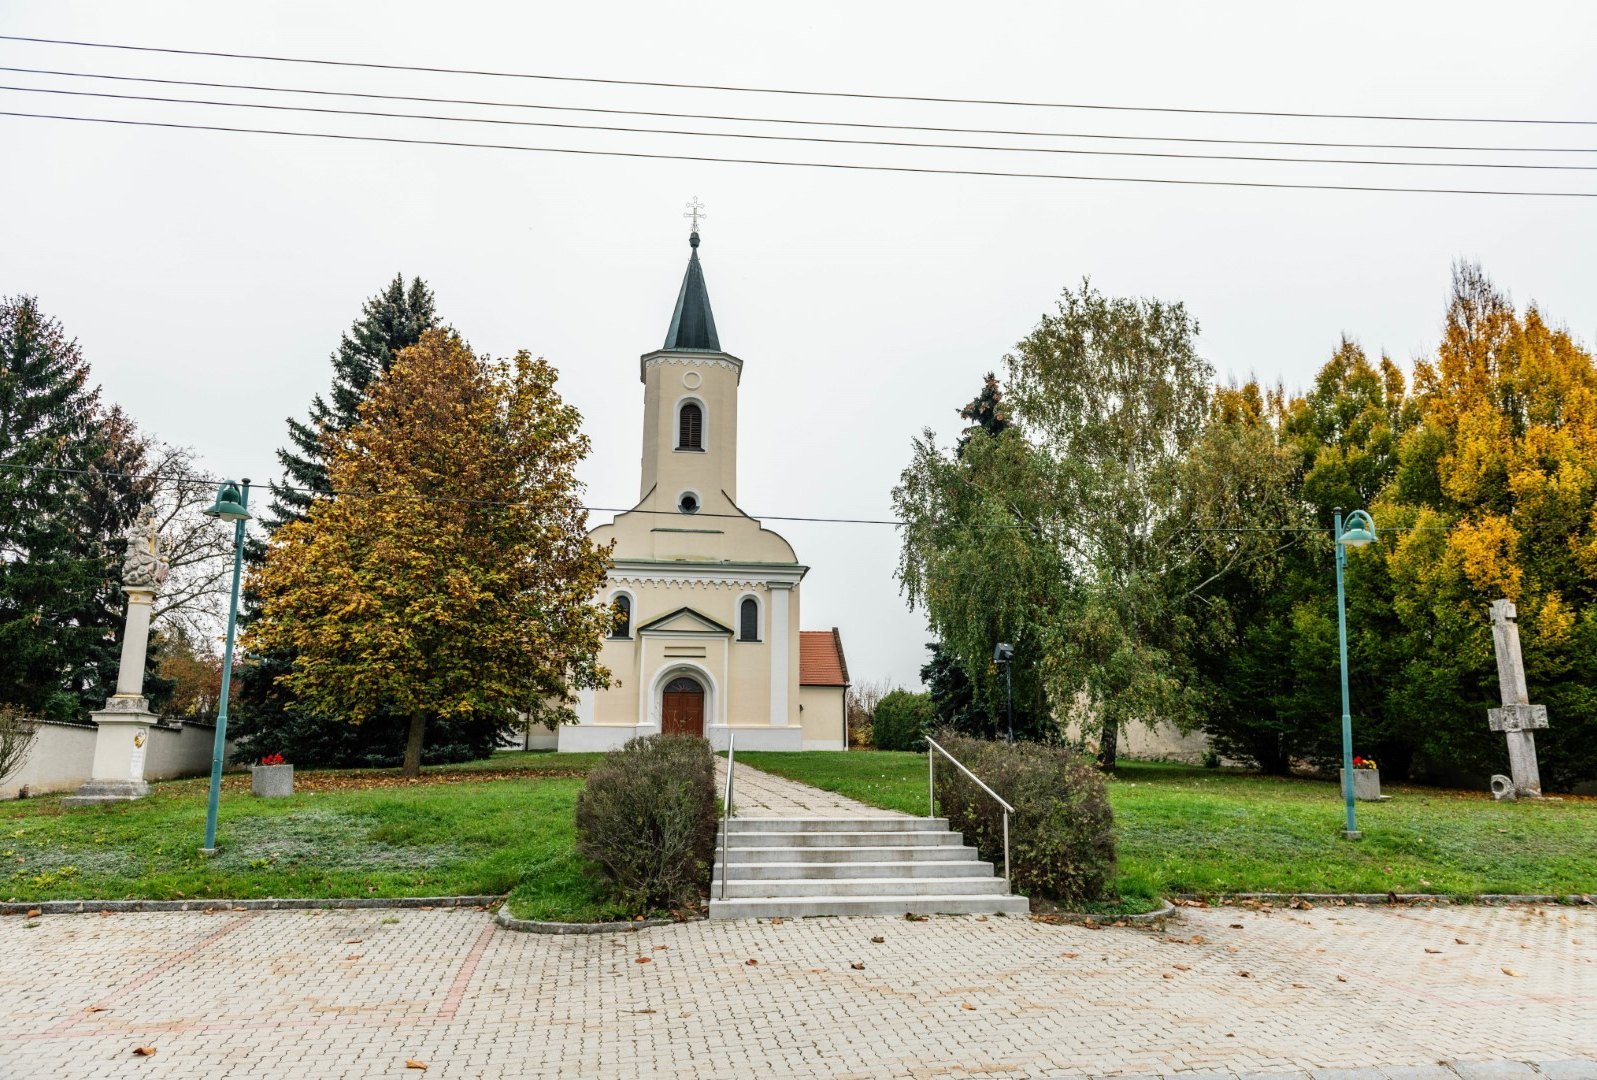 Kirche mit Stiegen zum Eingang